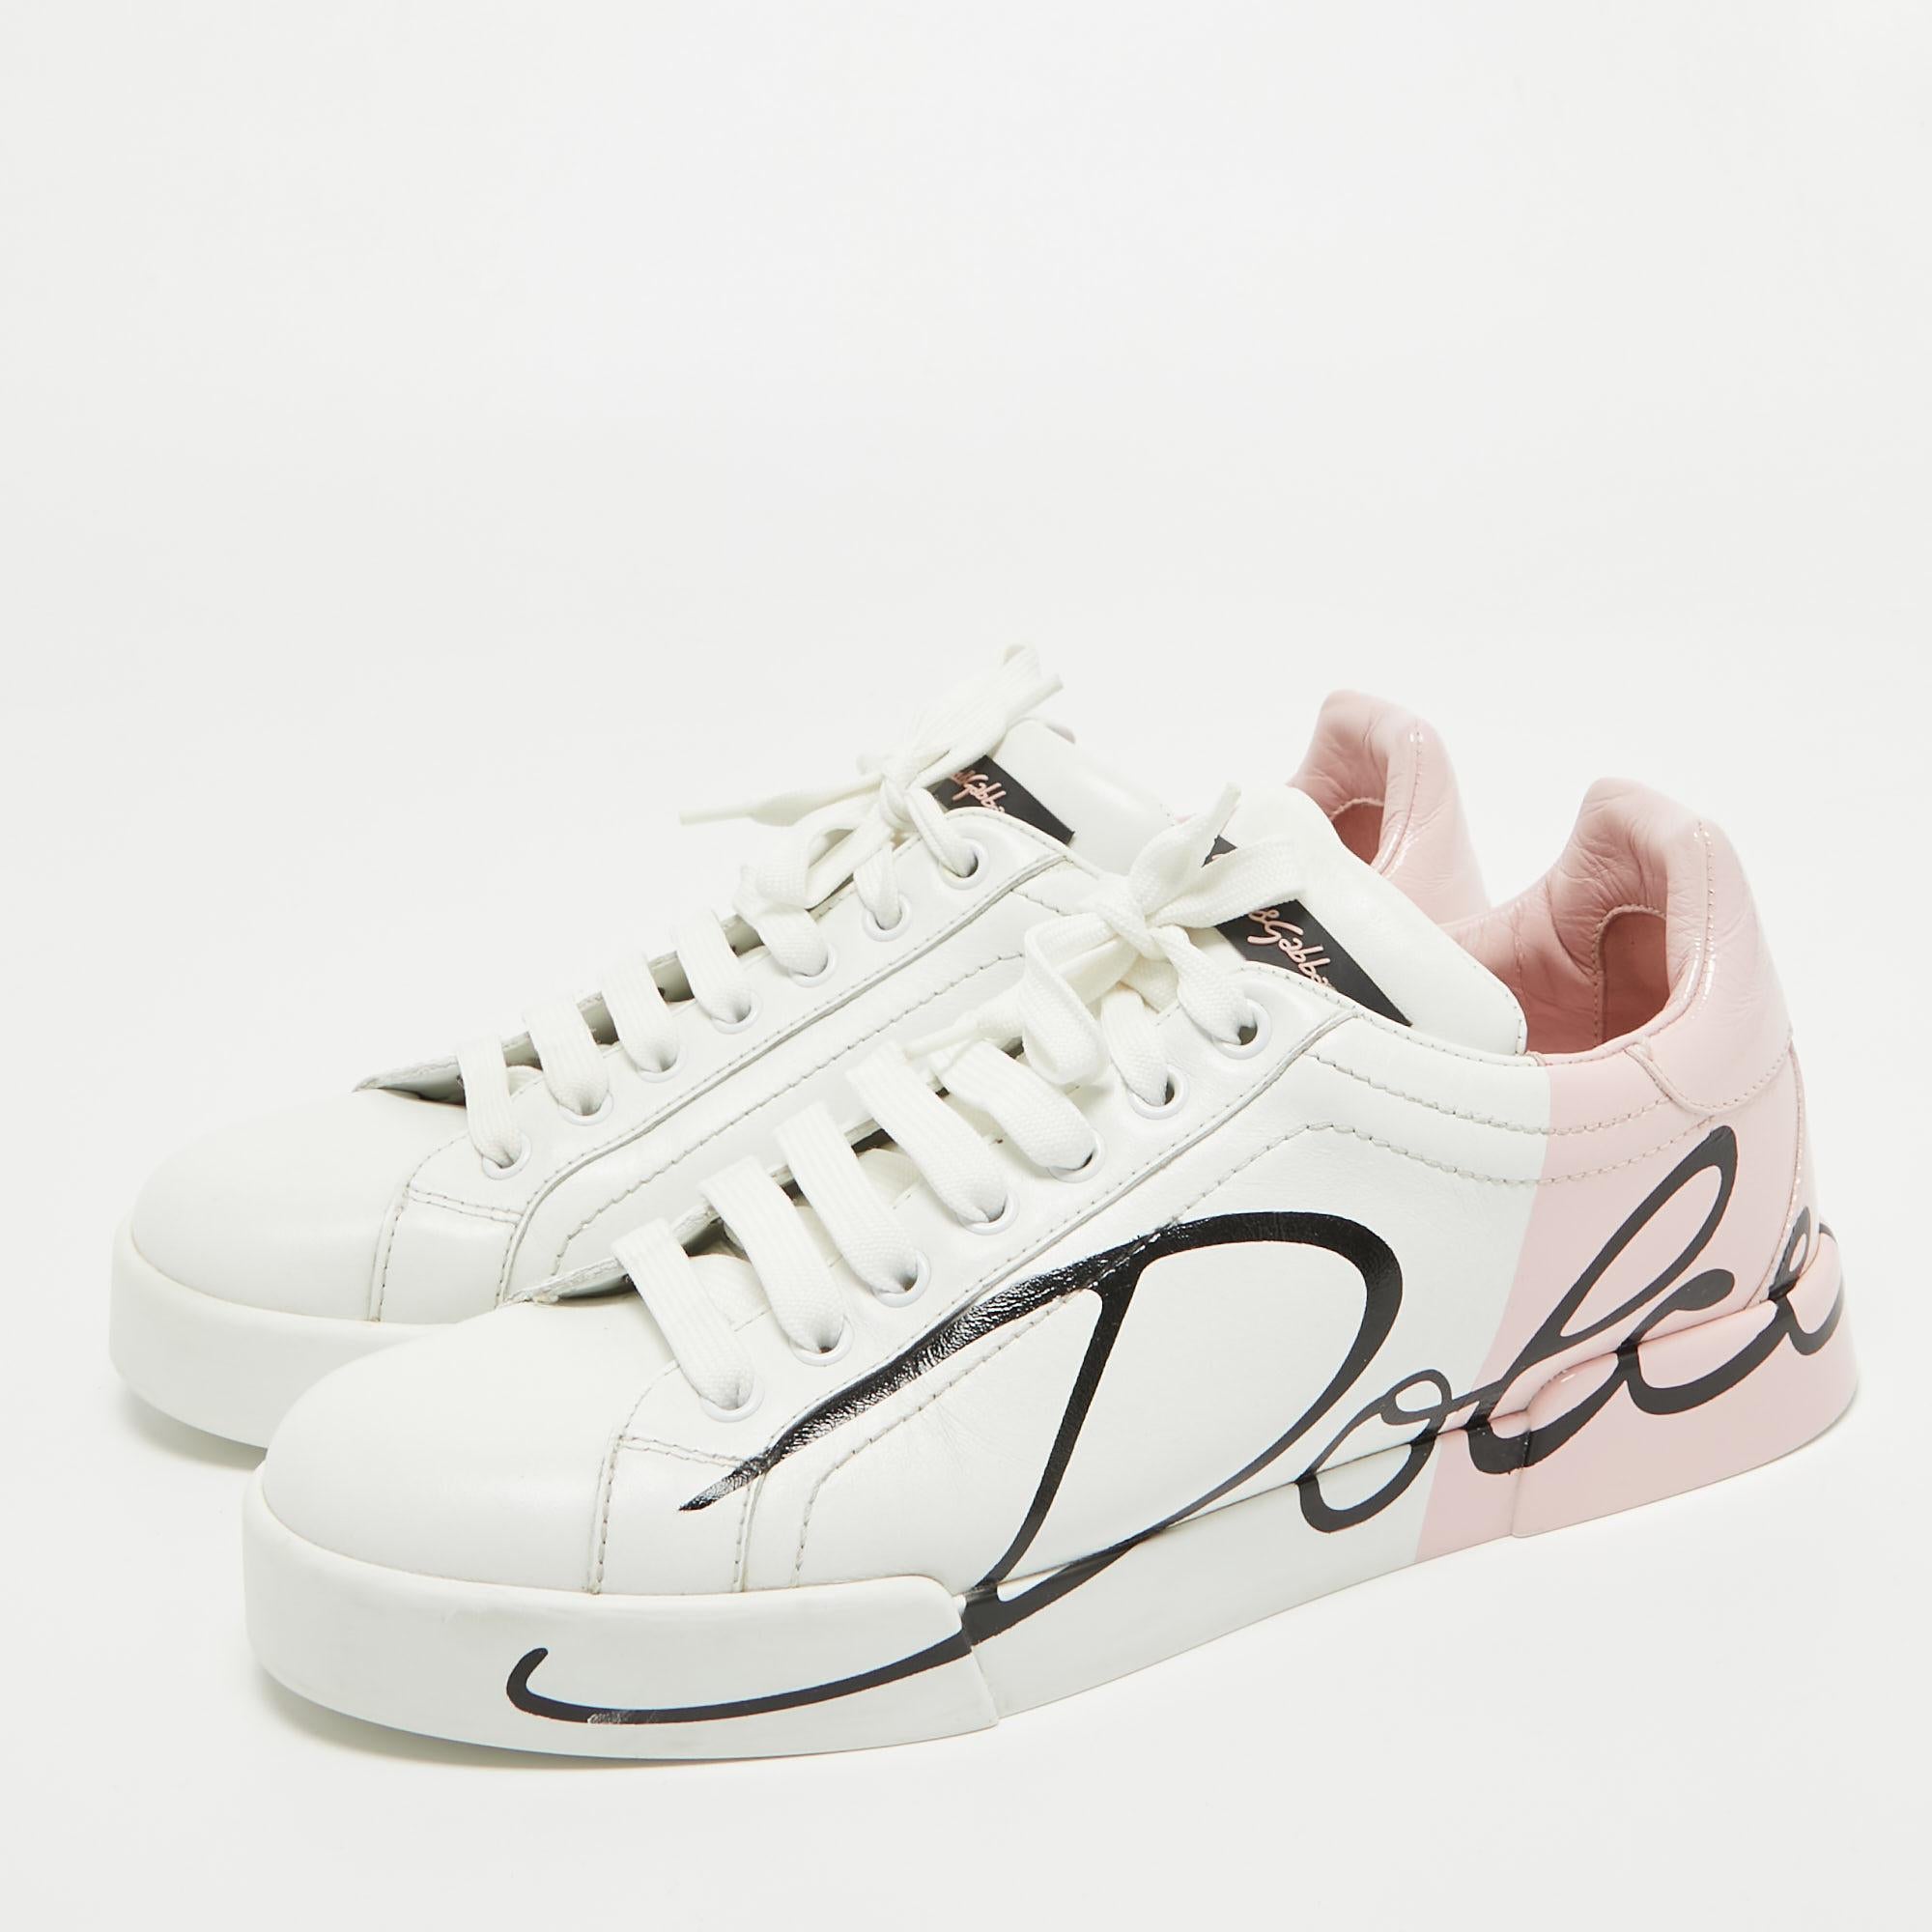 Dolce & Gabbana White/Mauve Leather Portofino Low Top Sneakers Size 39 3